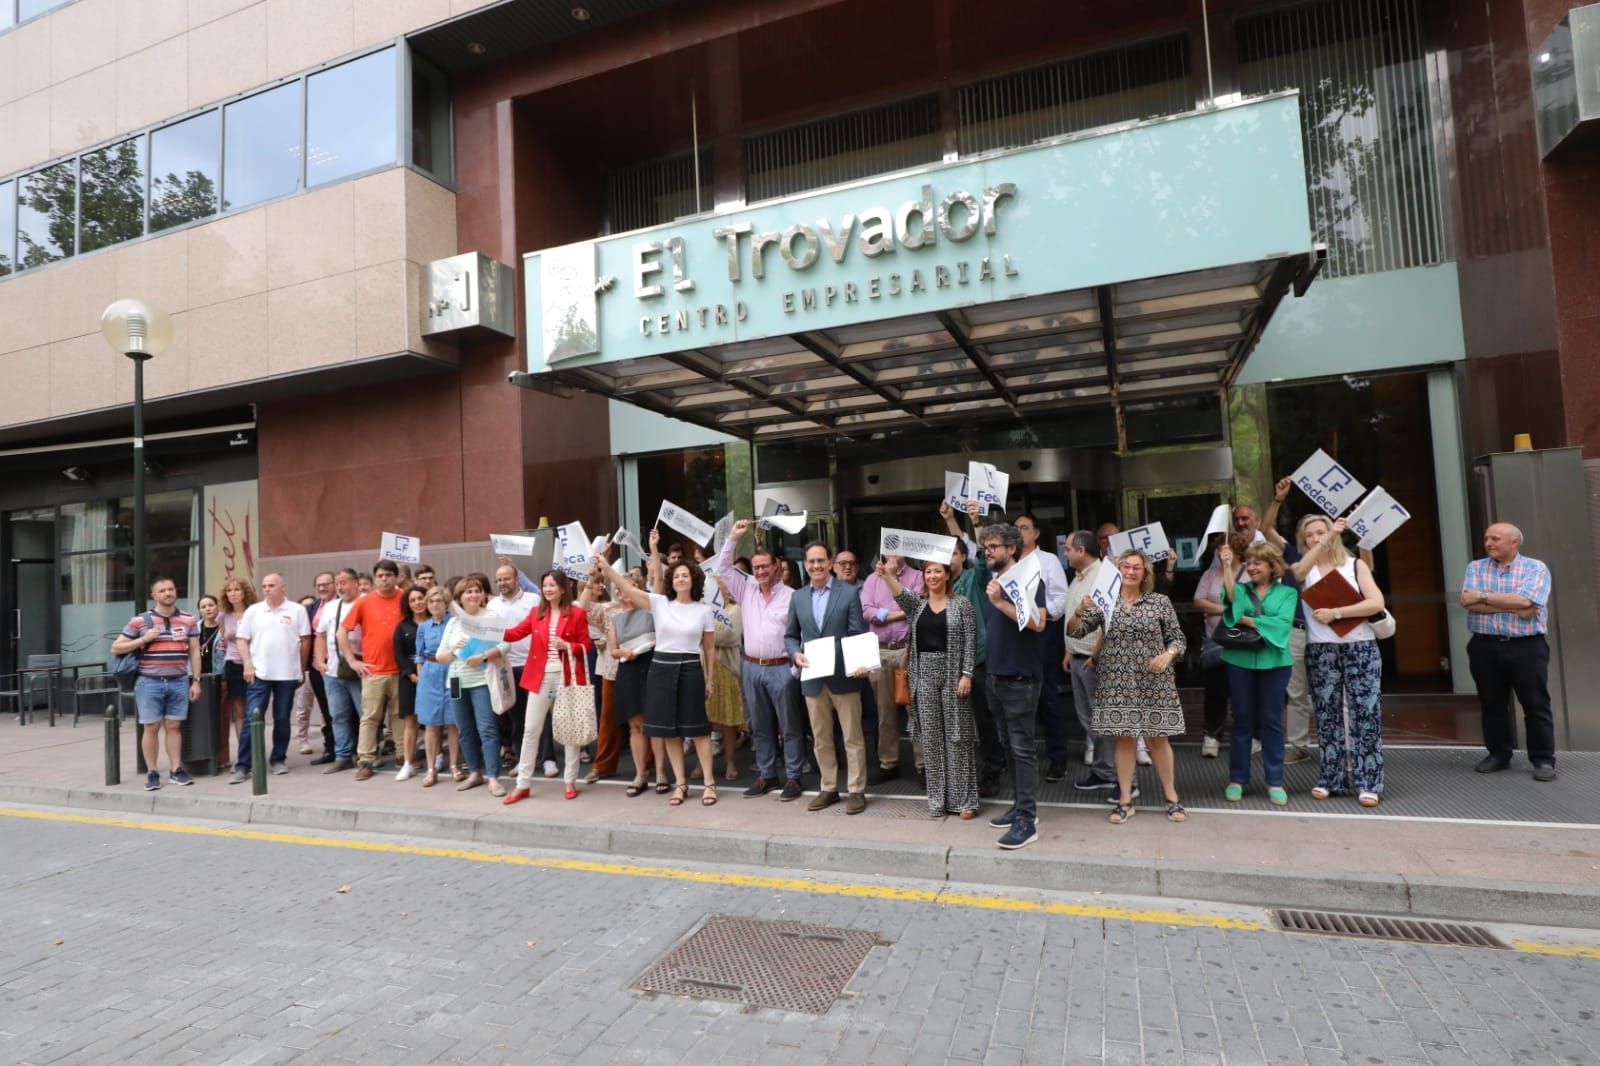 Protesta de los inspectores de trabajo en Zaragoza